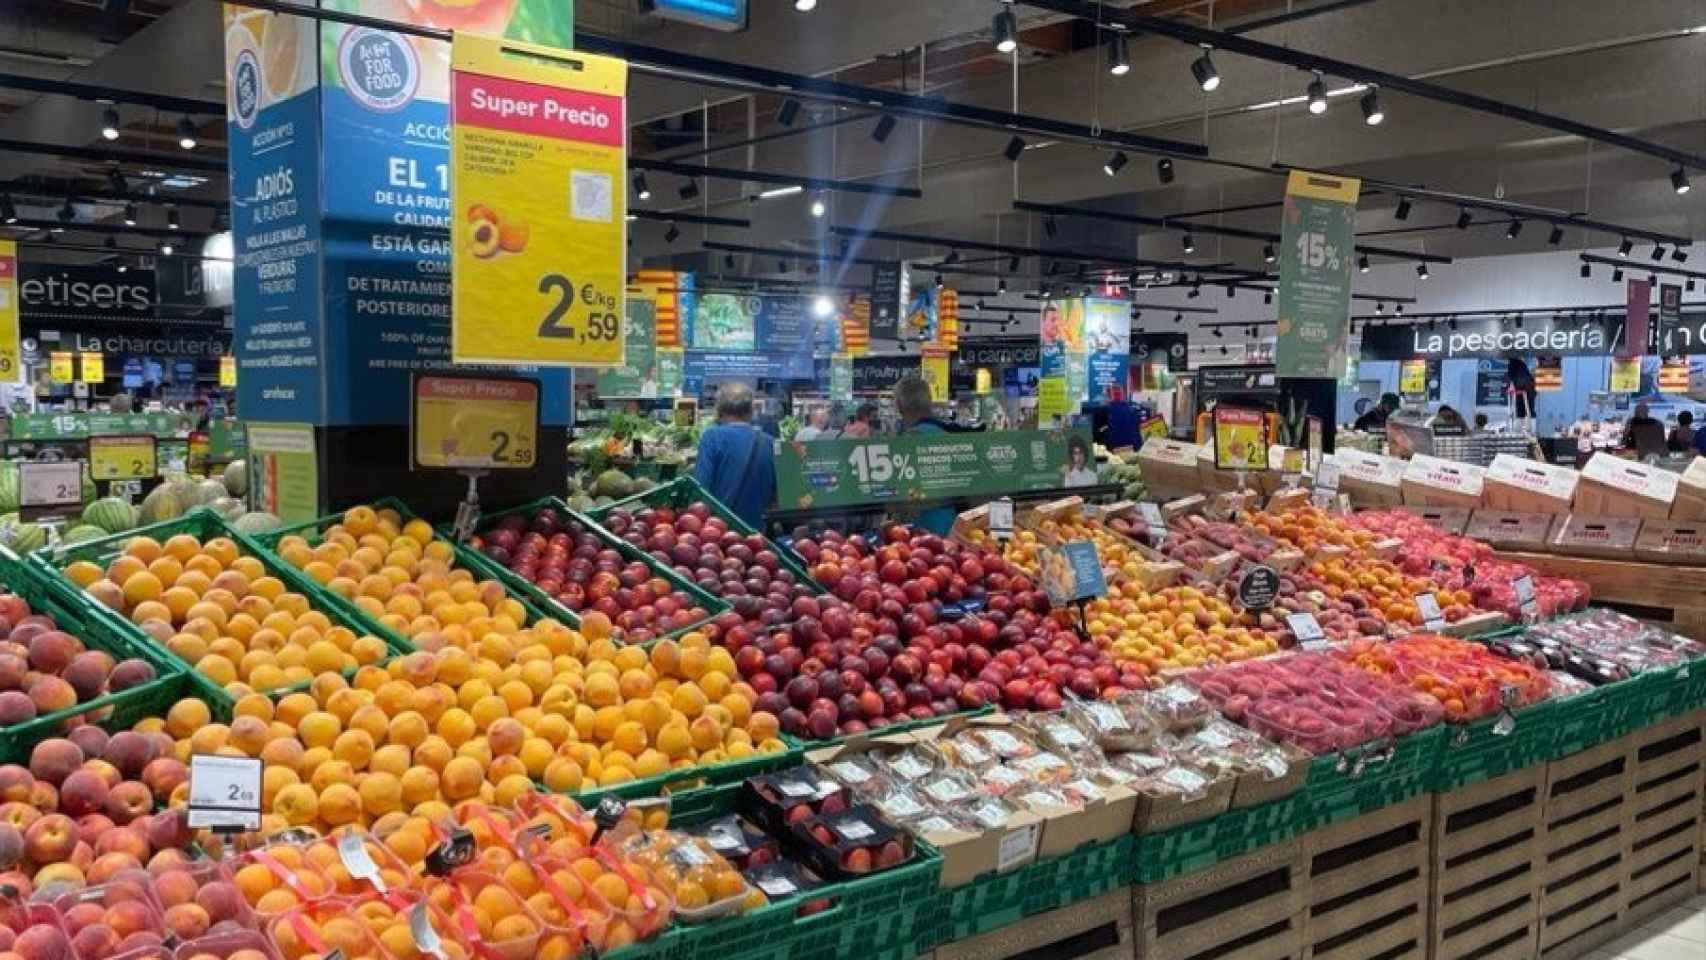 Imagen de la zona de frutas de un supermercado de Carrefour.